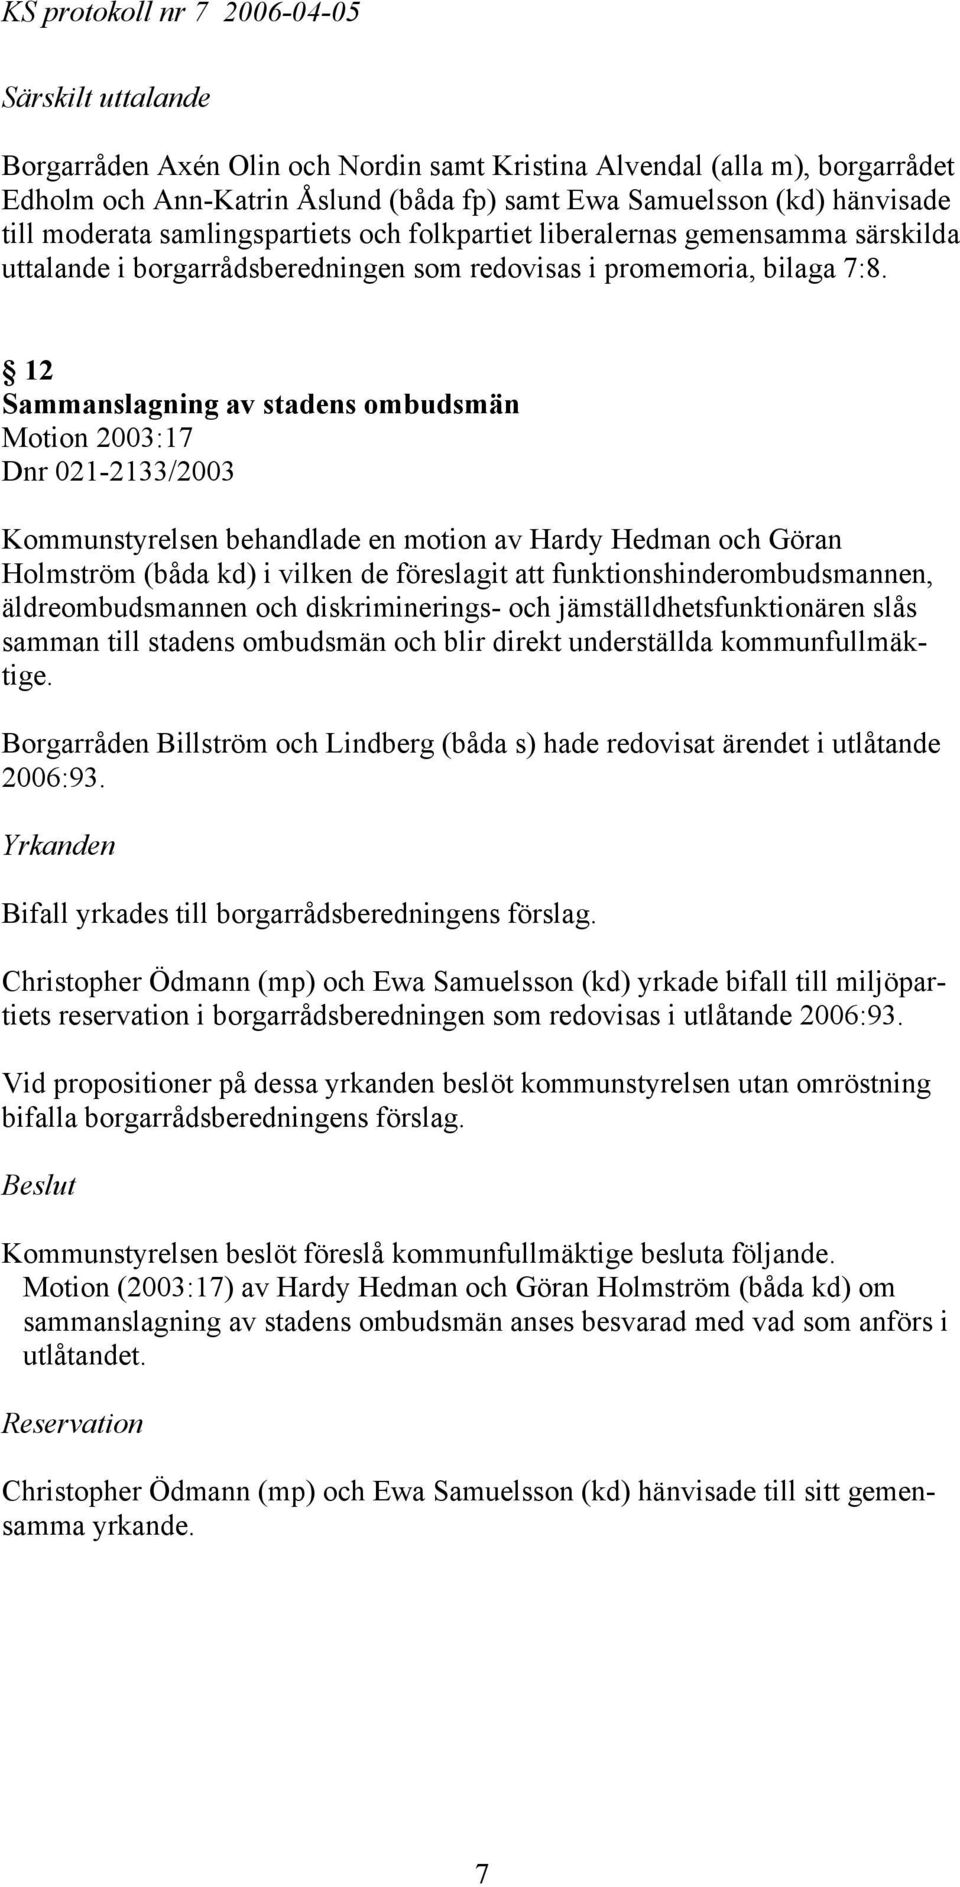 12 Sammanslagning av stadens ombudsmän Motion 2003:17 Dnr 021-2133/2003 Kommunstyrelsen behandlade en motion av Hardy Hedman och Göran Holmström (båda kd) i vilken de föreslagit att